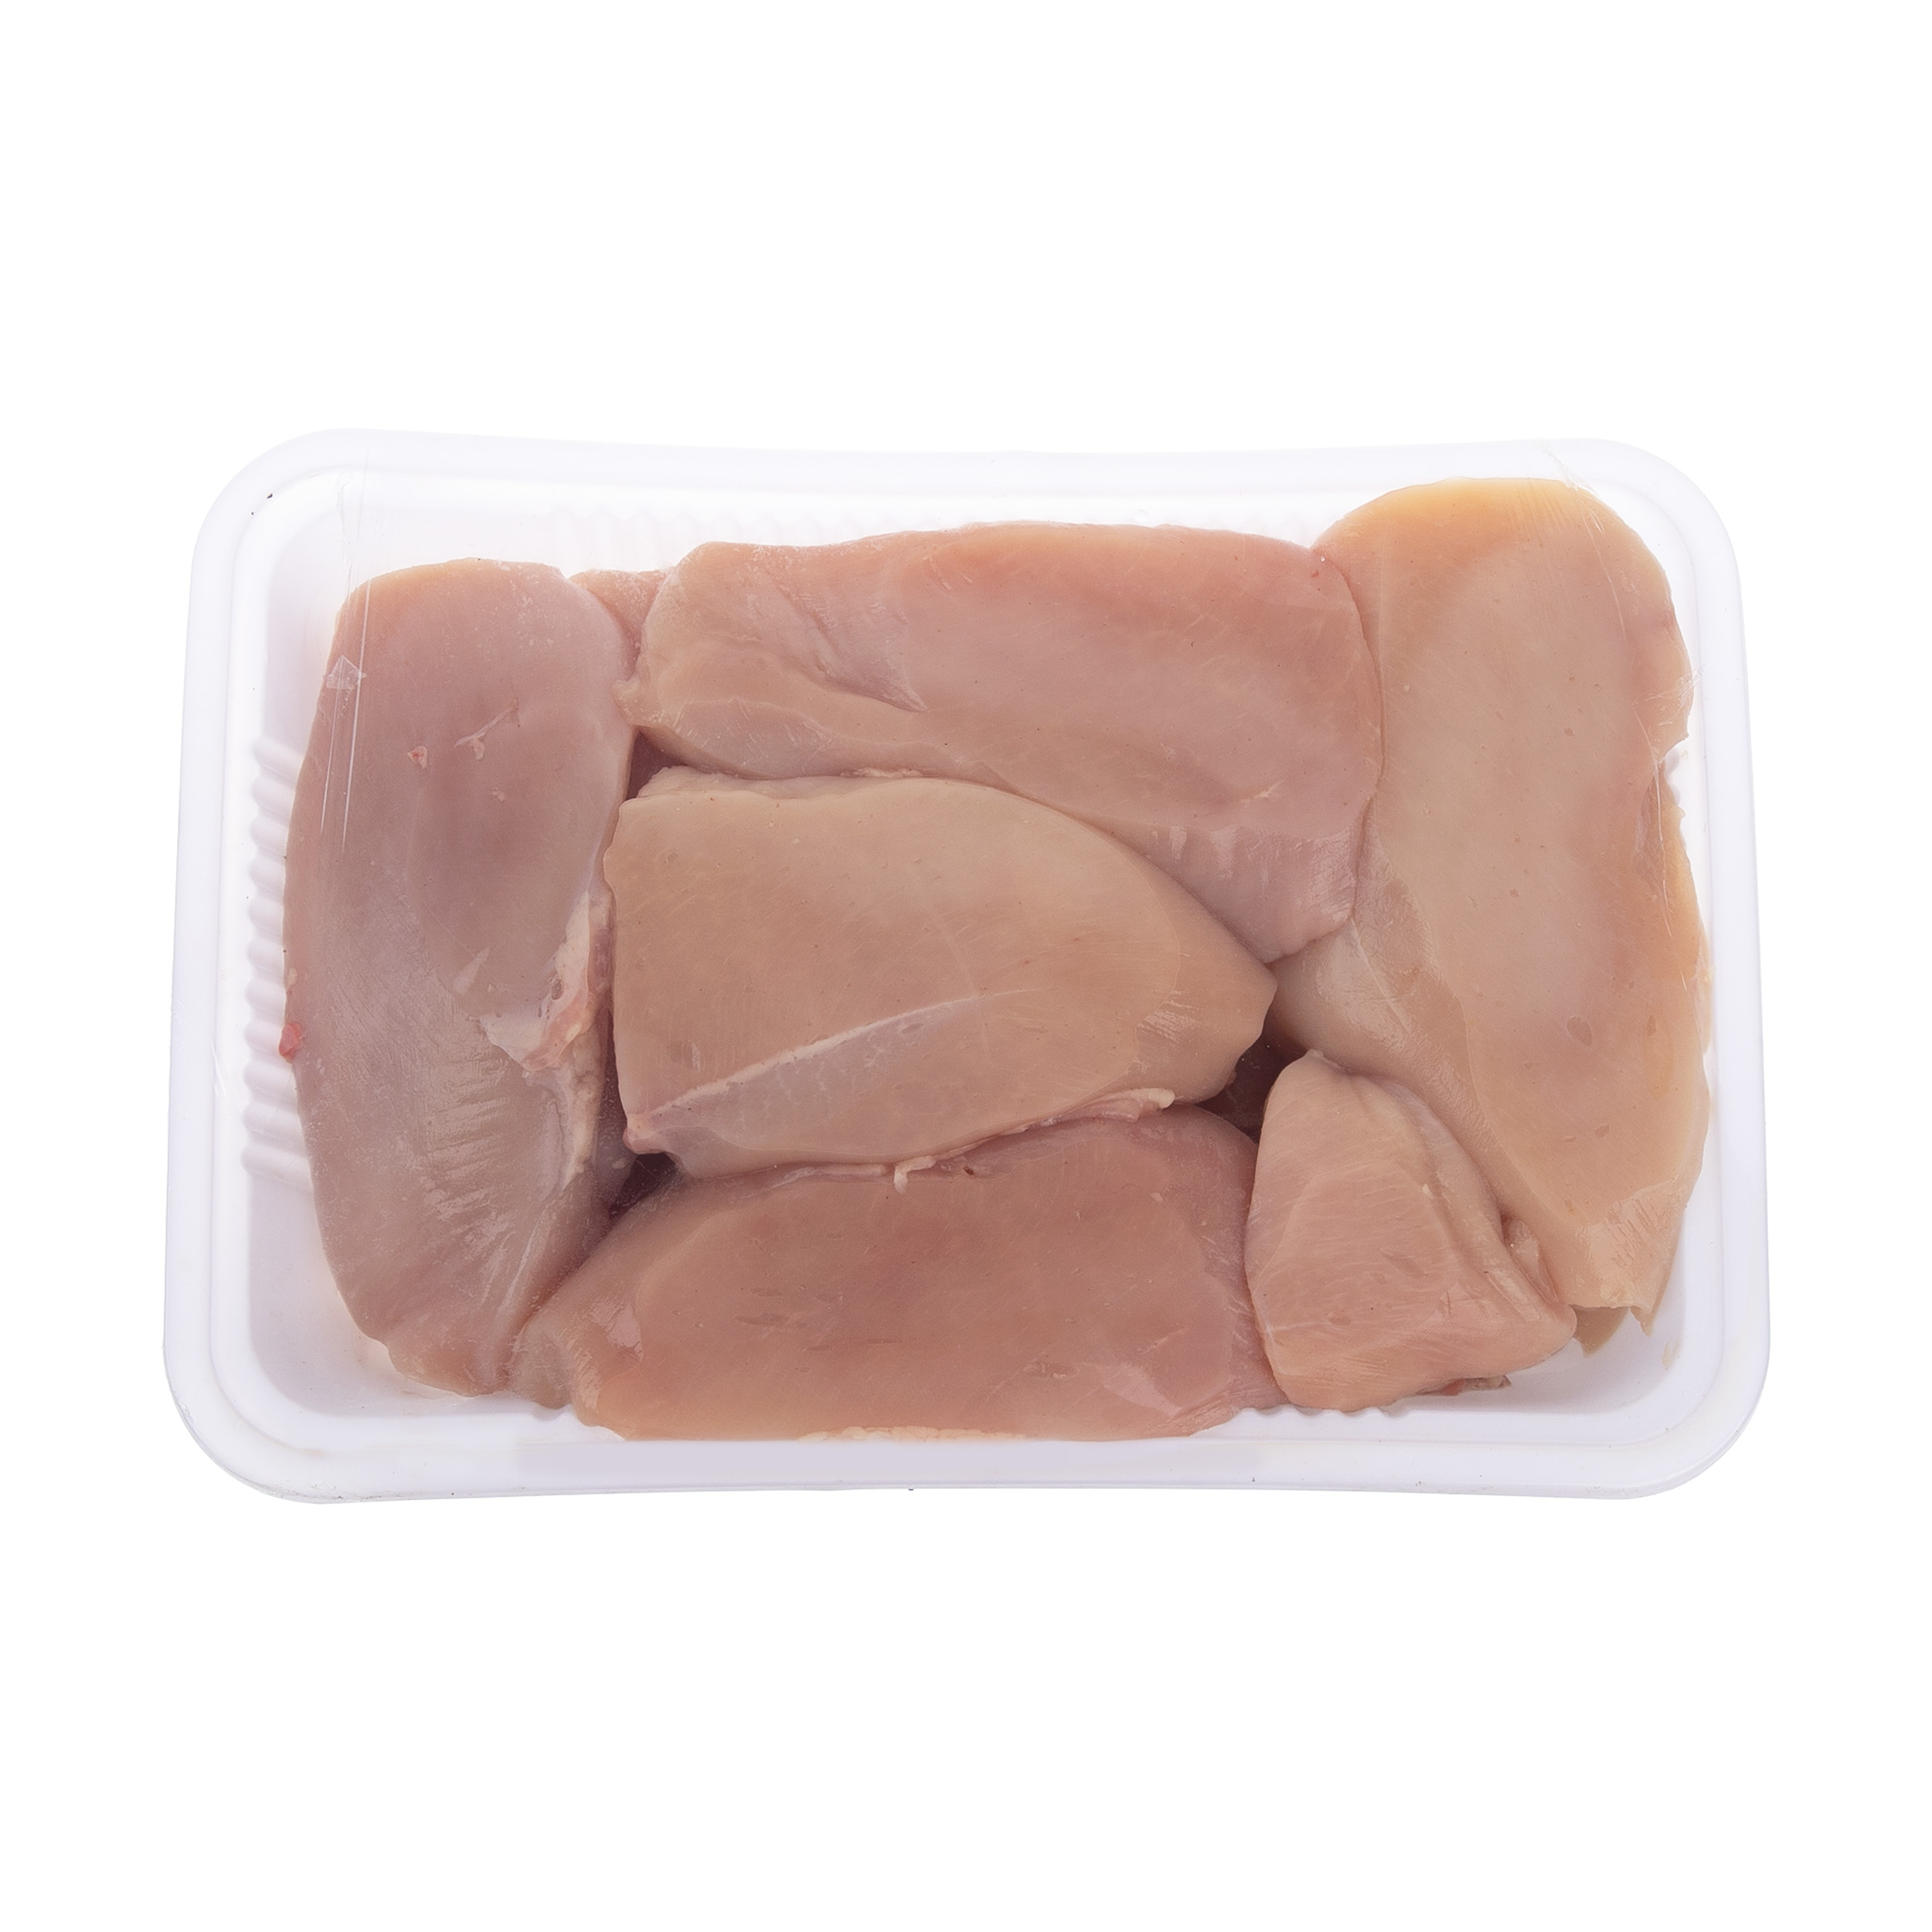 سینه مرغ خرد شده بهین پروتئین - 1.8 کیلوگرم